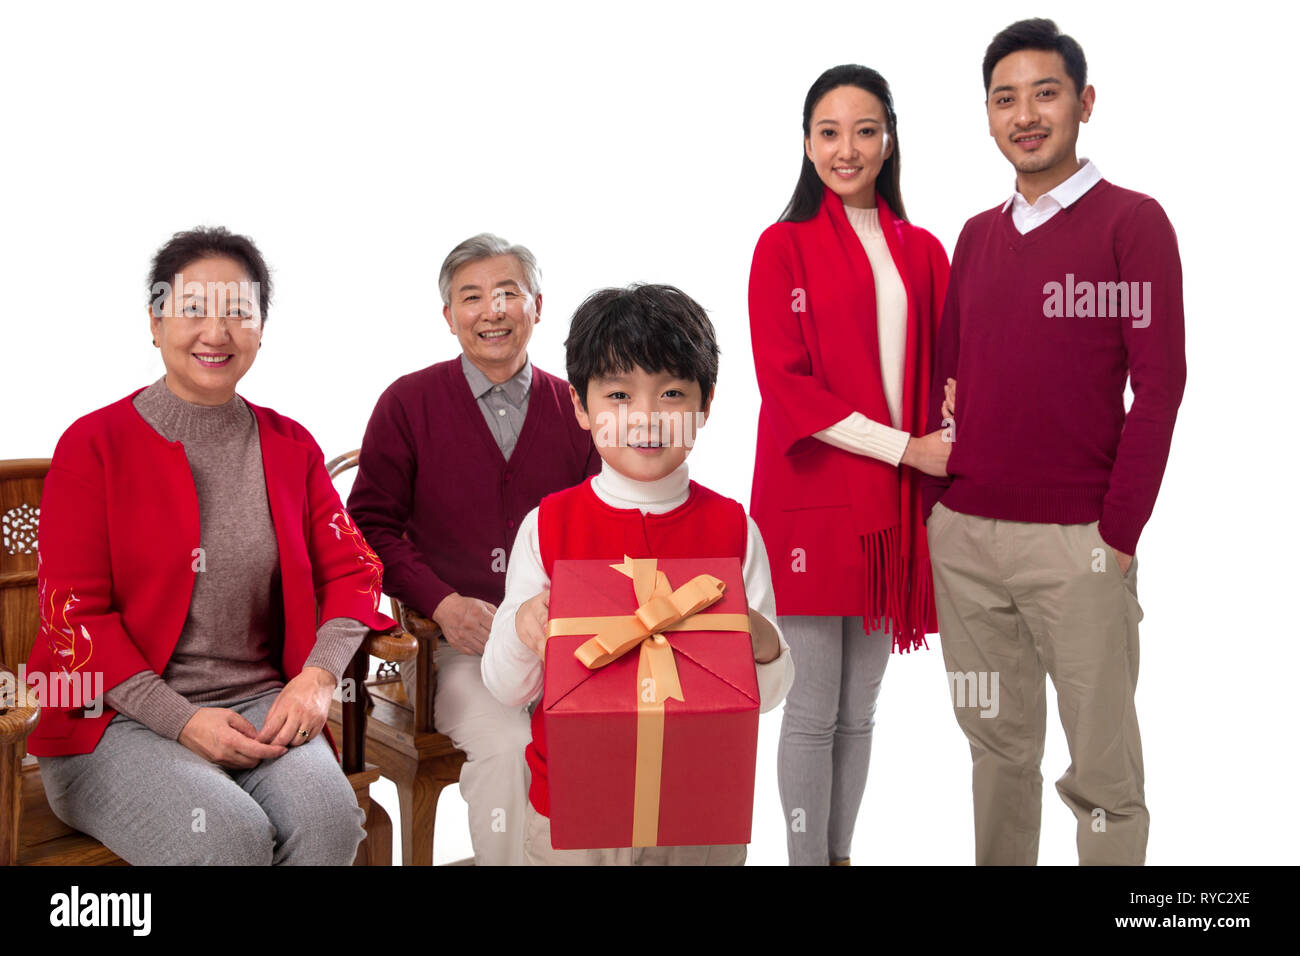 Happy New Year's family Stock Photo